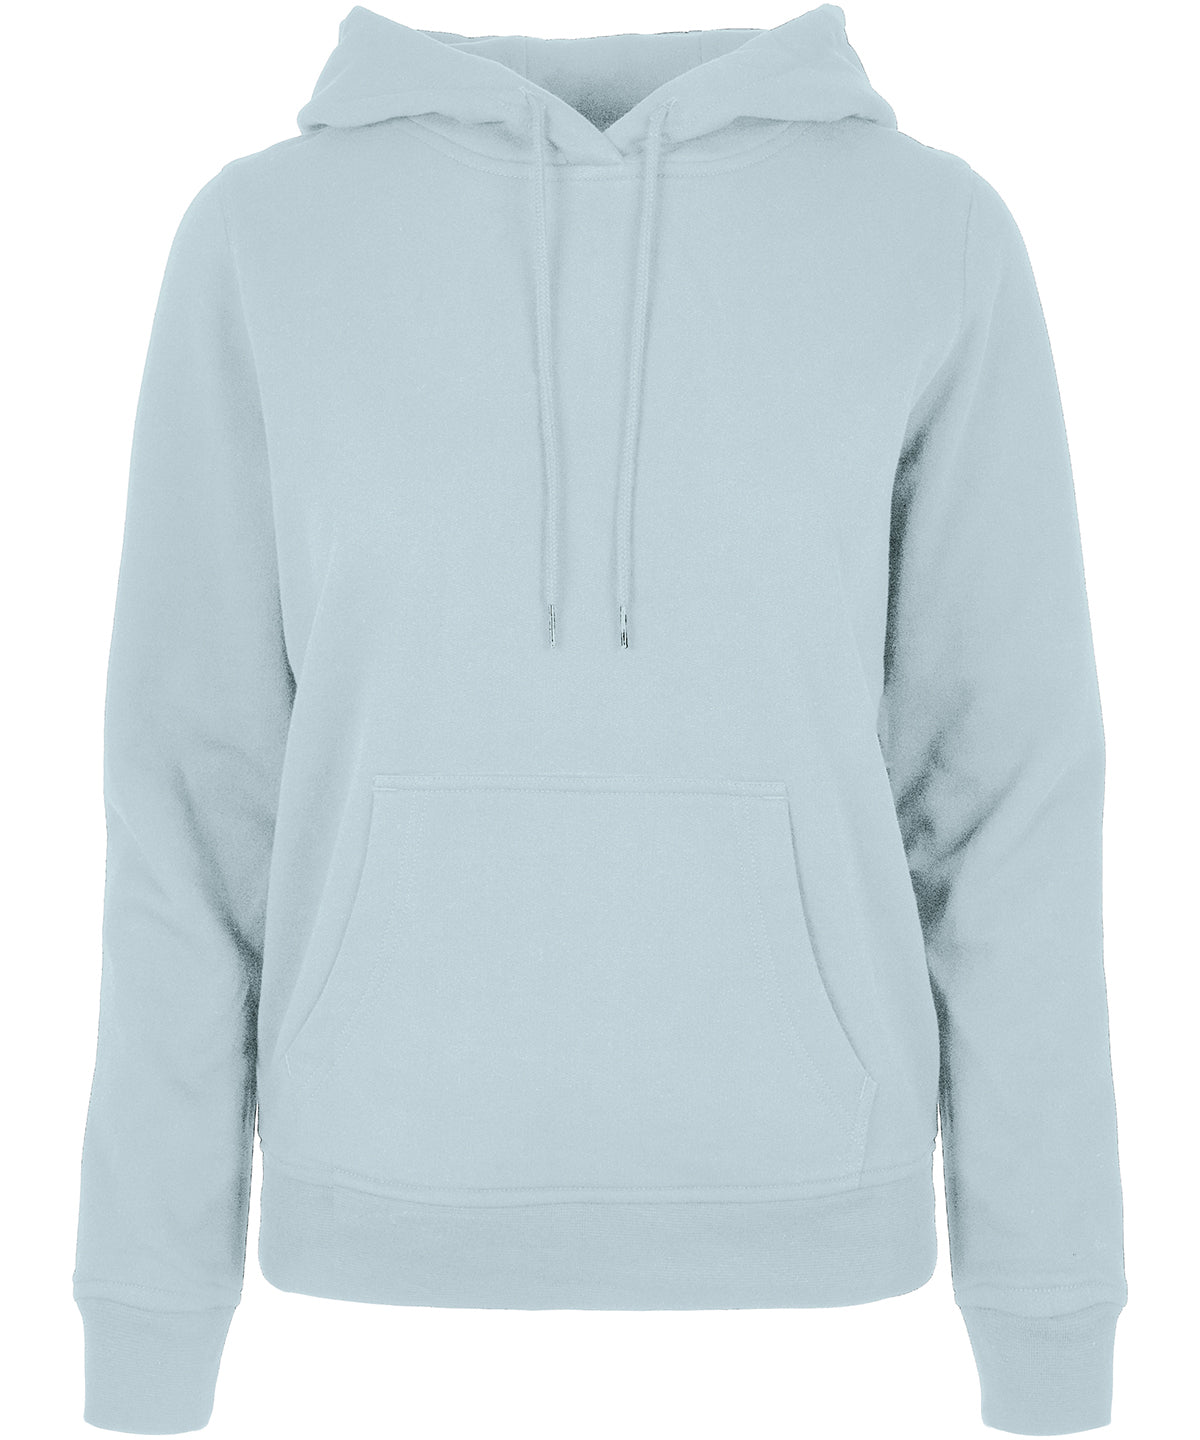 Personalised Hoodies - Black Build Your Brand Basic Women's basic hoodie